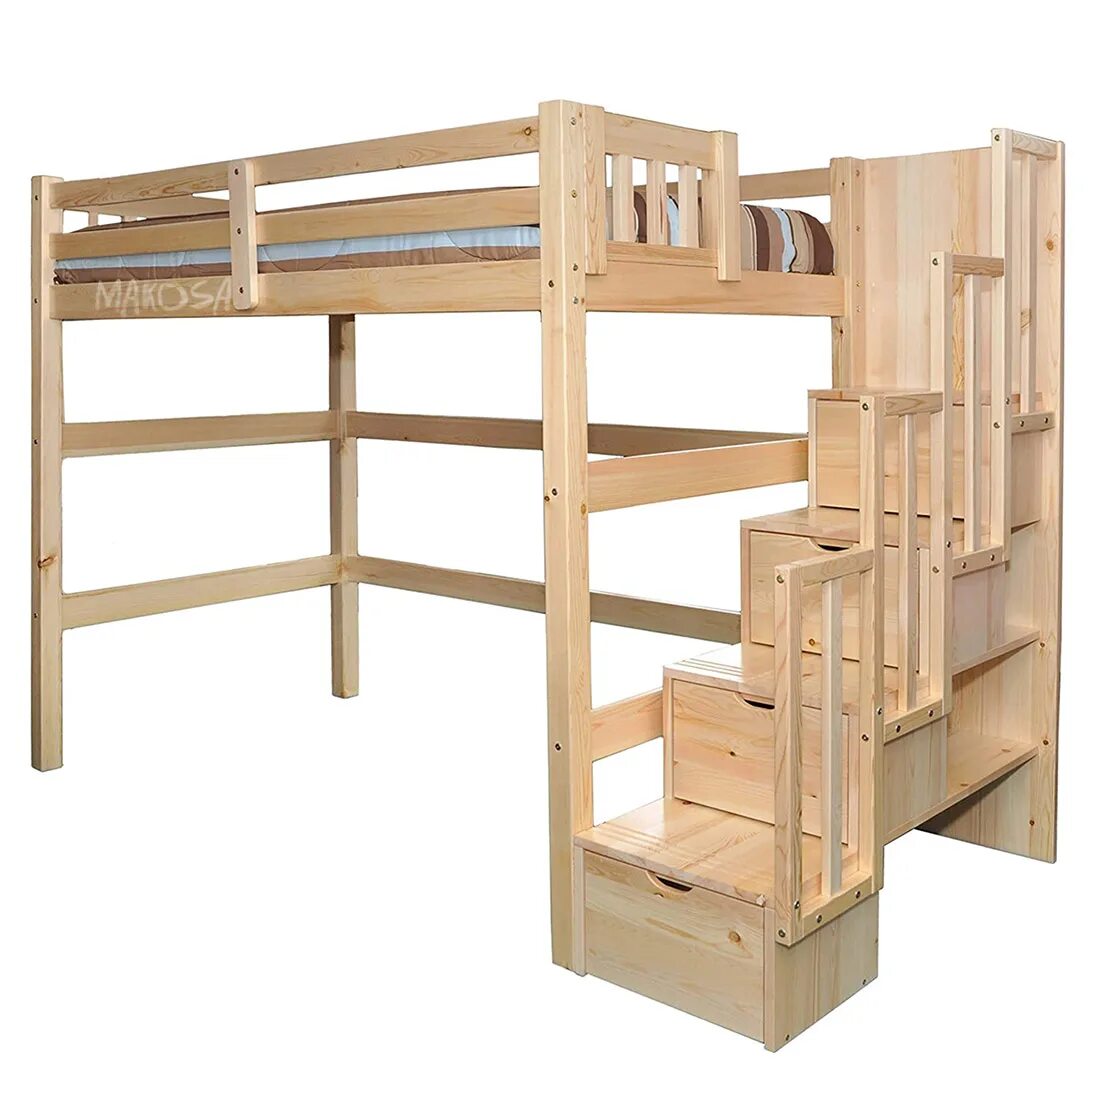 Купить кровать лестница. Кровать-чердак Мезонин мебель. Кровать чердак 160*80. Кровать чердак Гулливер 2. Двухъярусная кровать Мезонин.